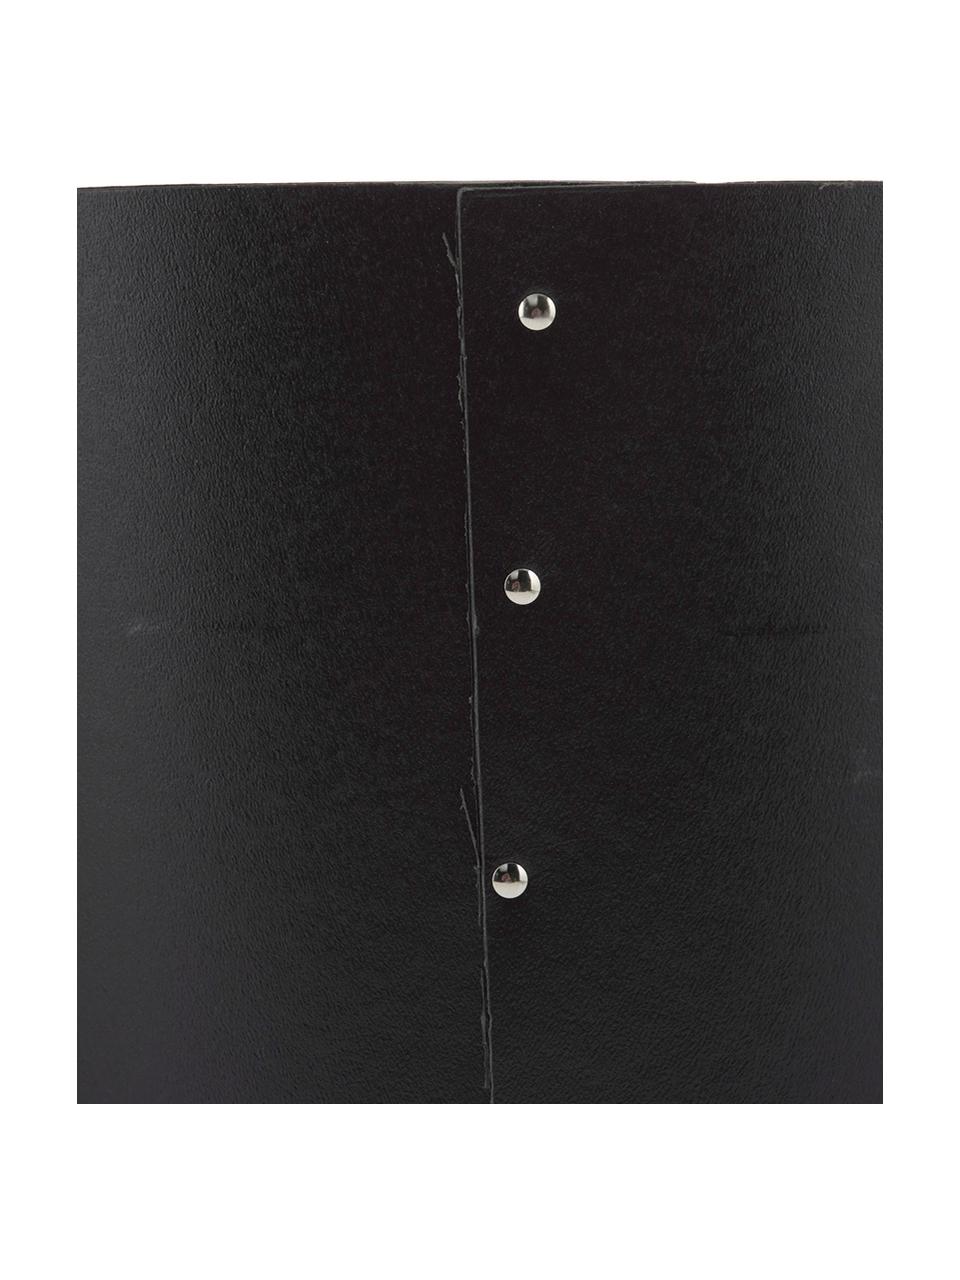 Cestino per carta in cartone nero Aries, Cartone solido e laminato, Nero, argentato, Ø 27 x Alt. 35 cm